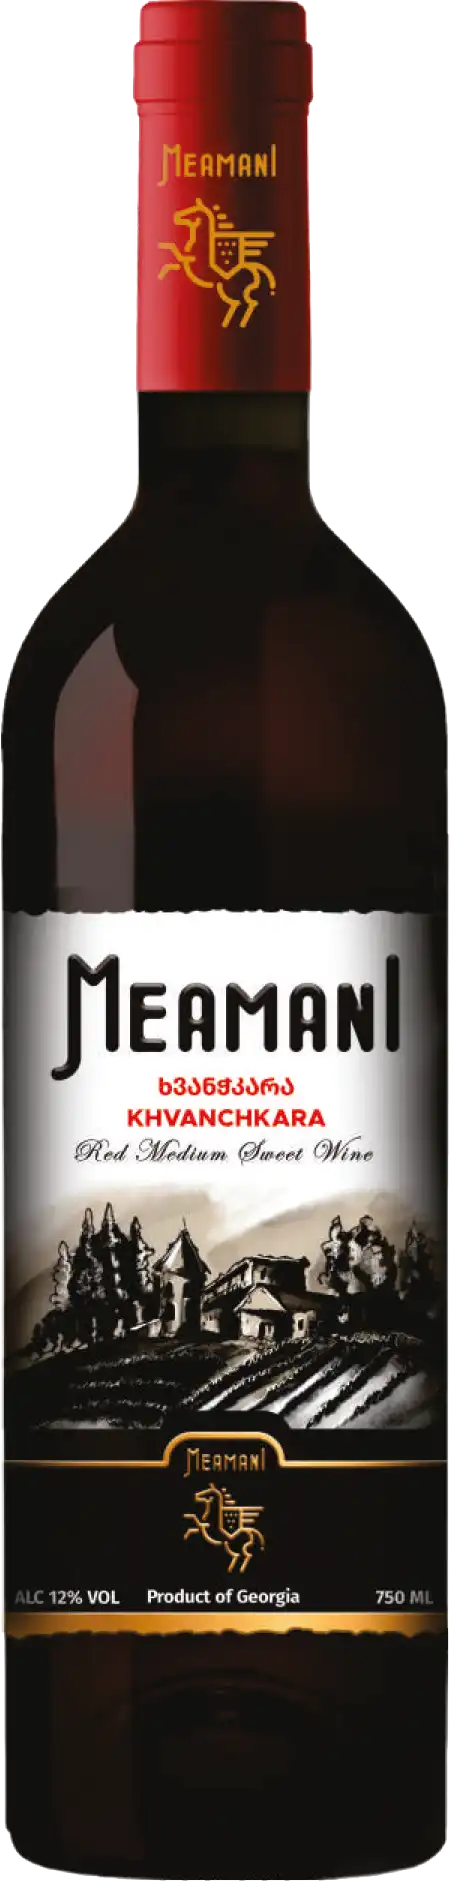 Вино Хванчкара красное полусладкое Меамани